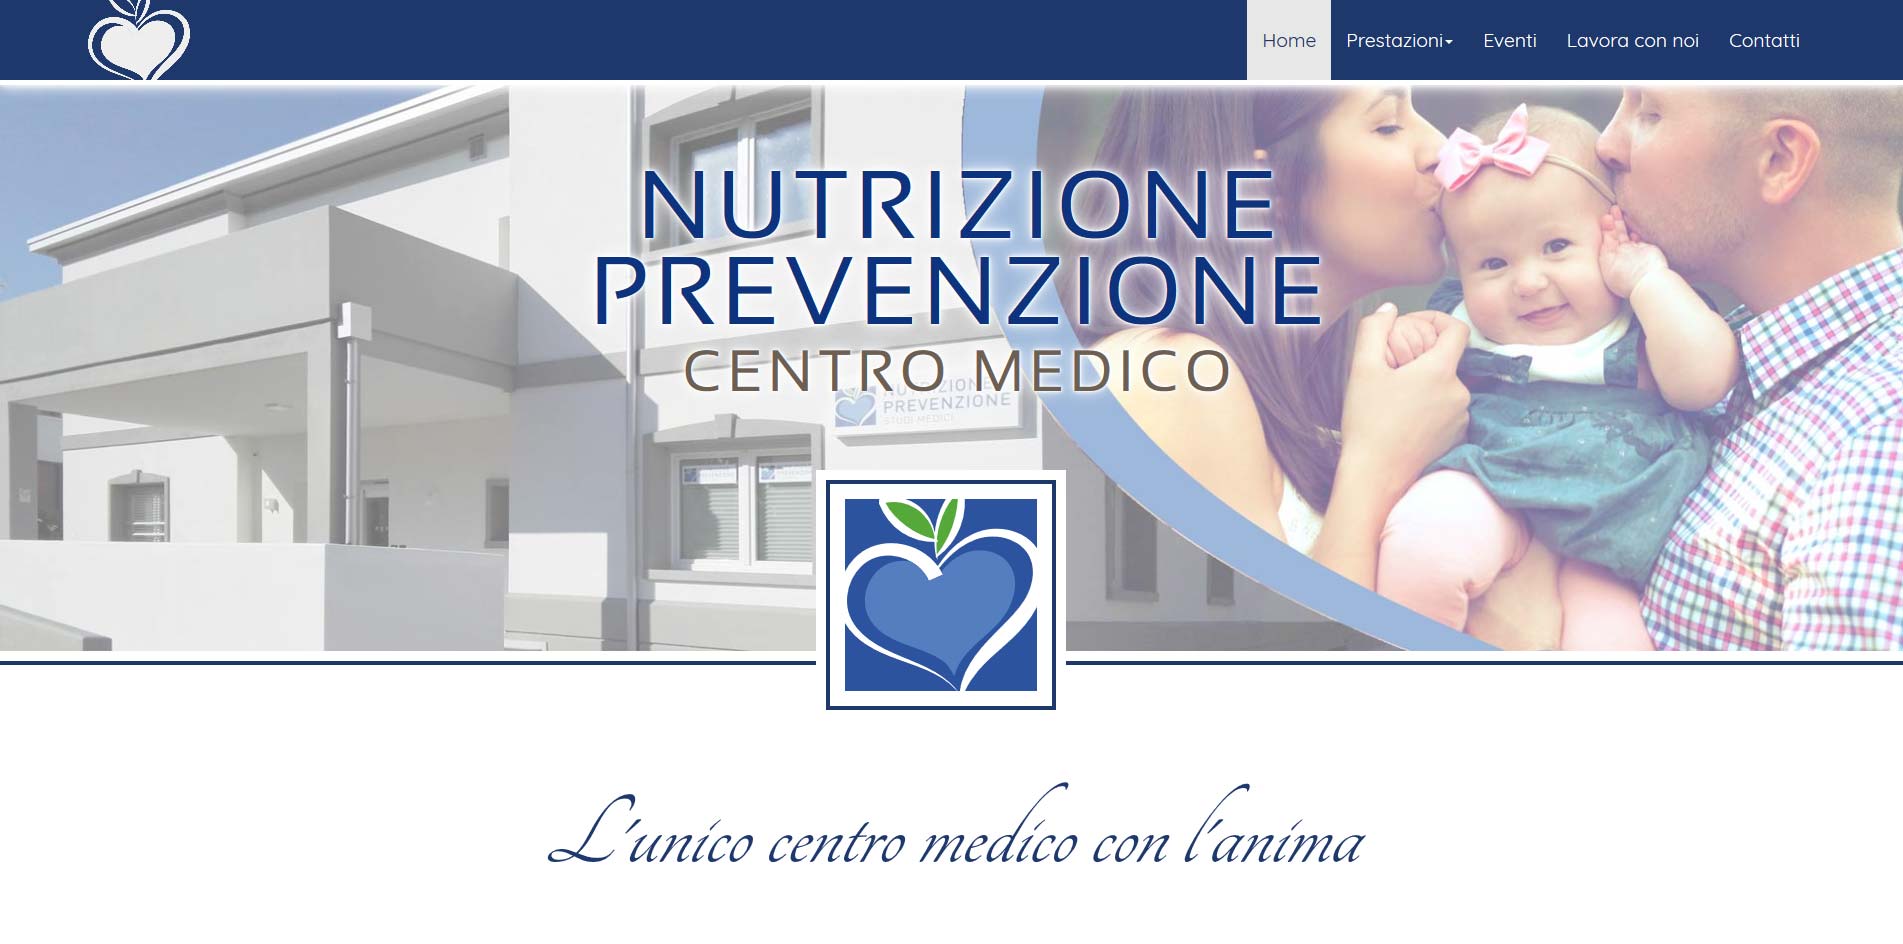 Centro Medico Nutrizione Prevenzione di Pordenone, specializzato in nutrizione e dietologia